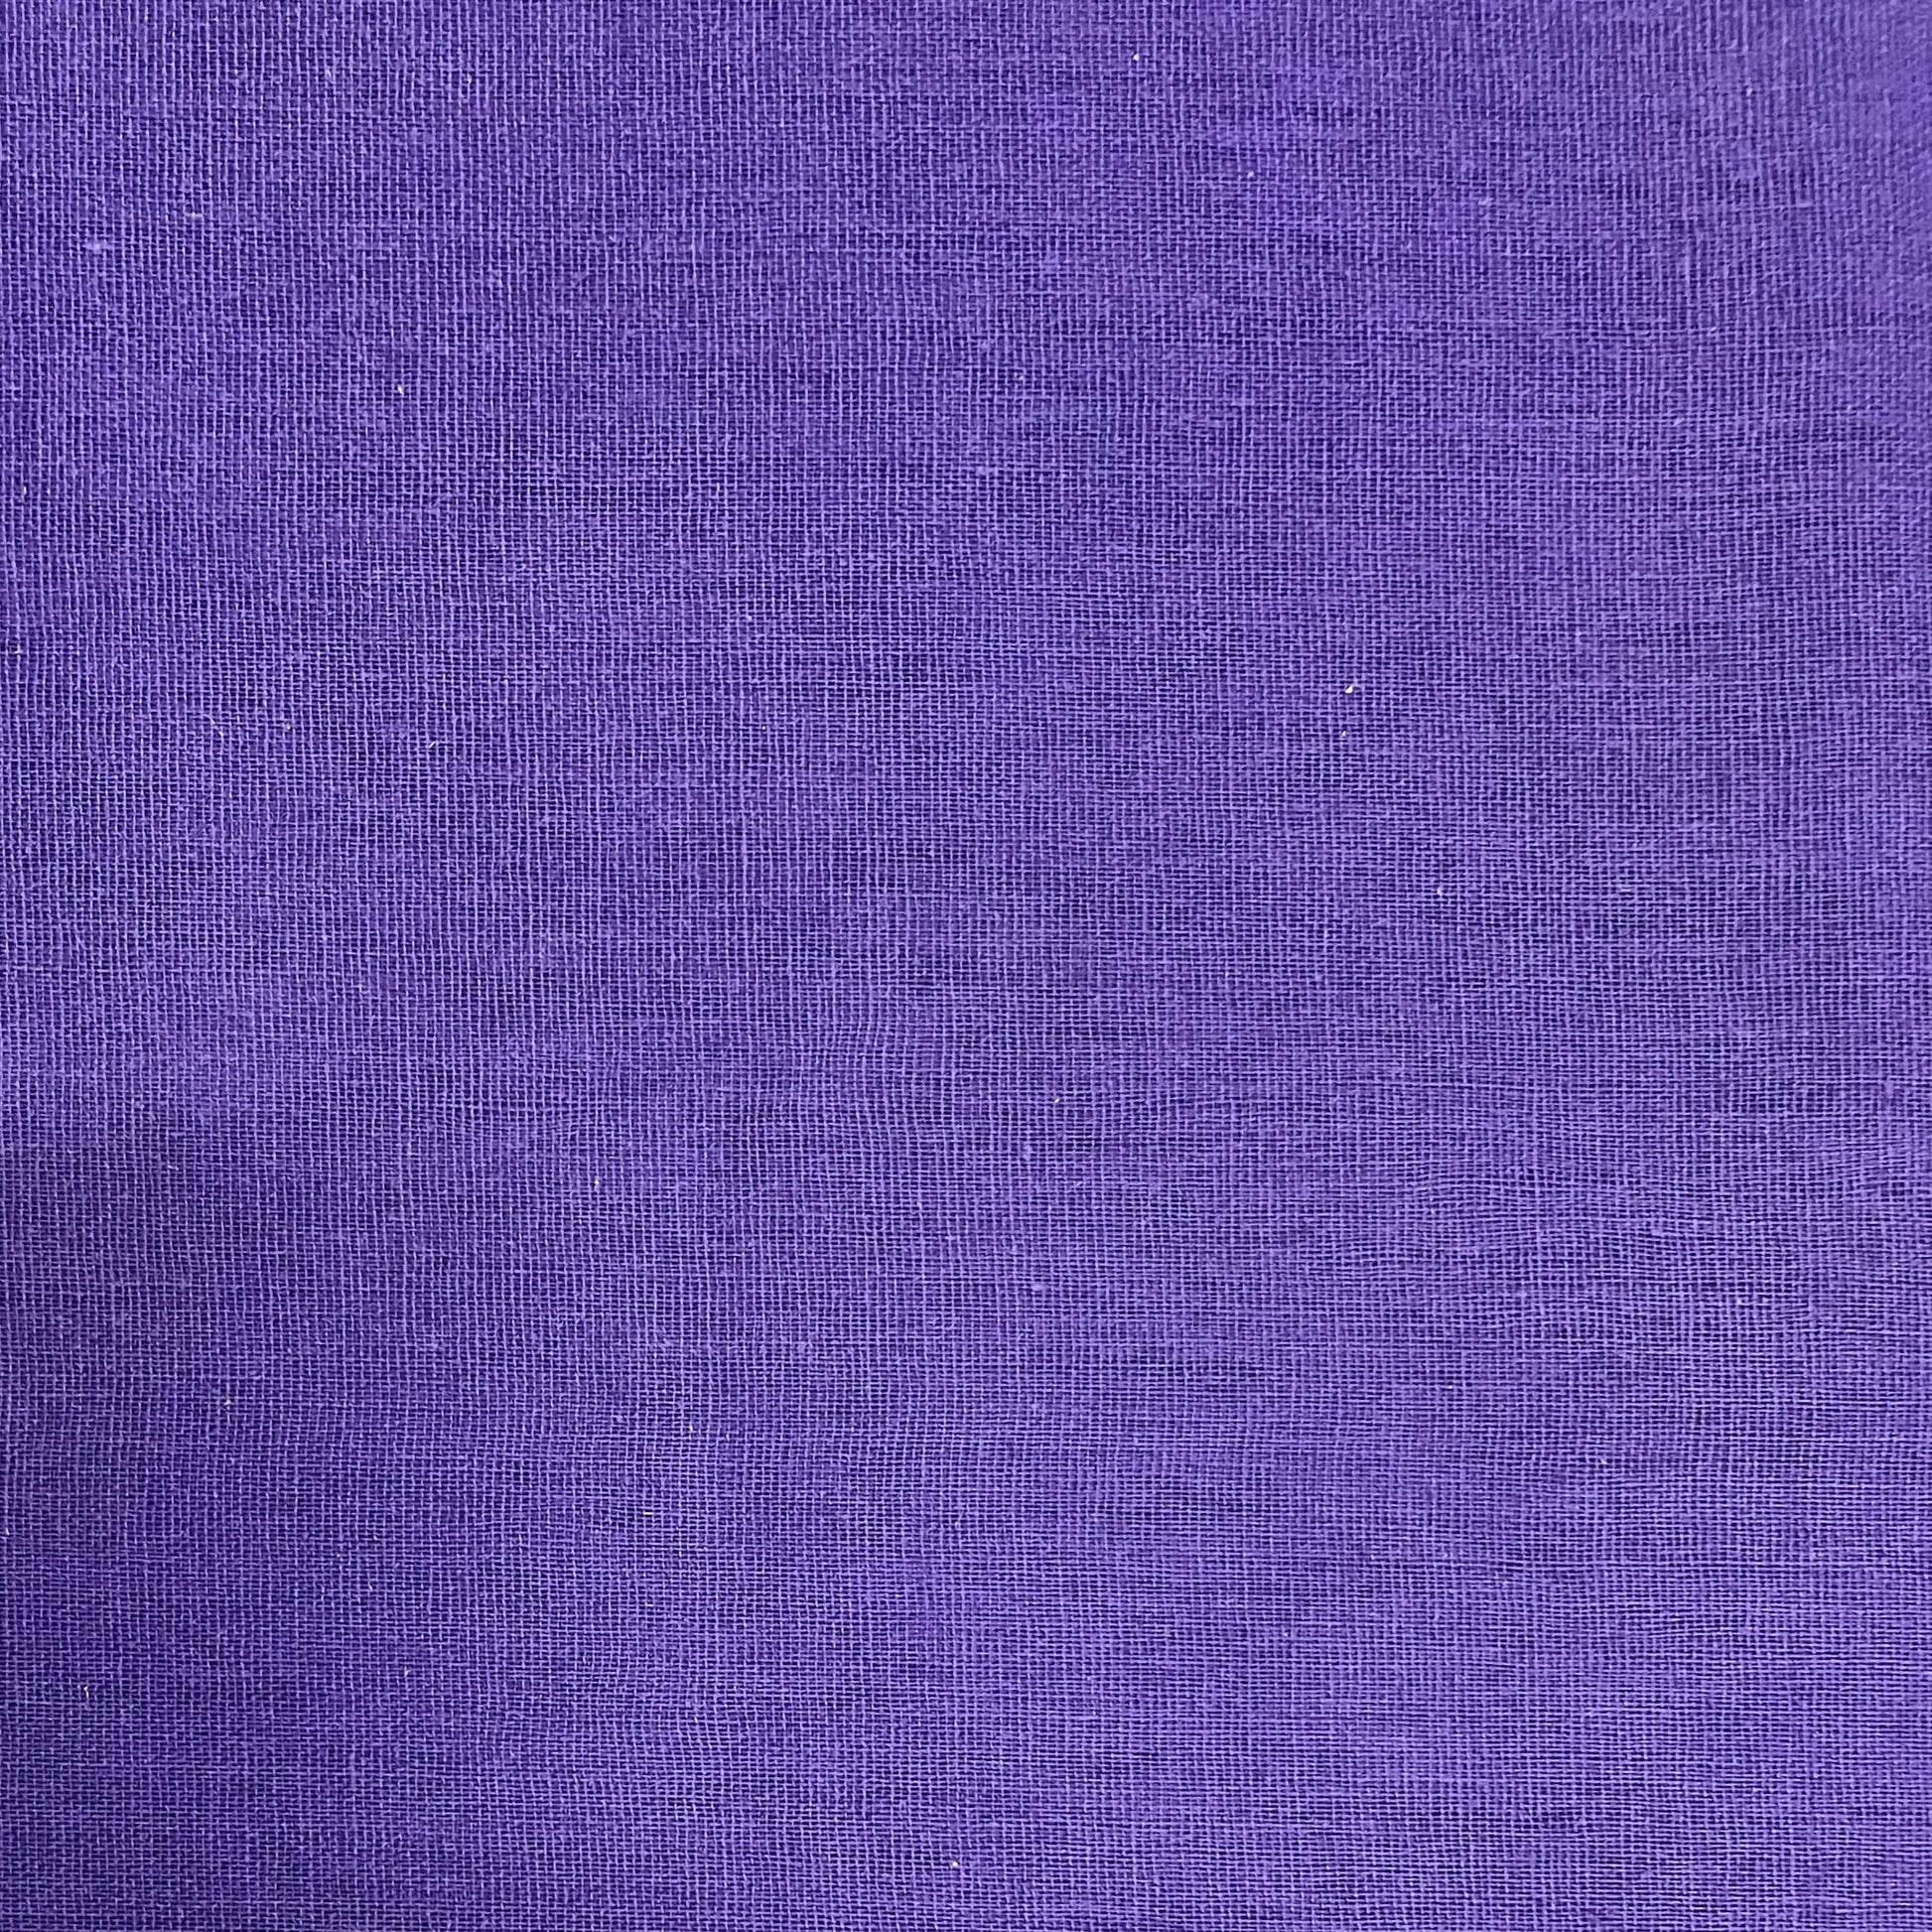 Dark Purple Solid Cotton Lining Fabric - TradeUNO